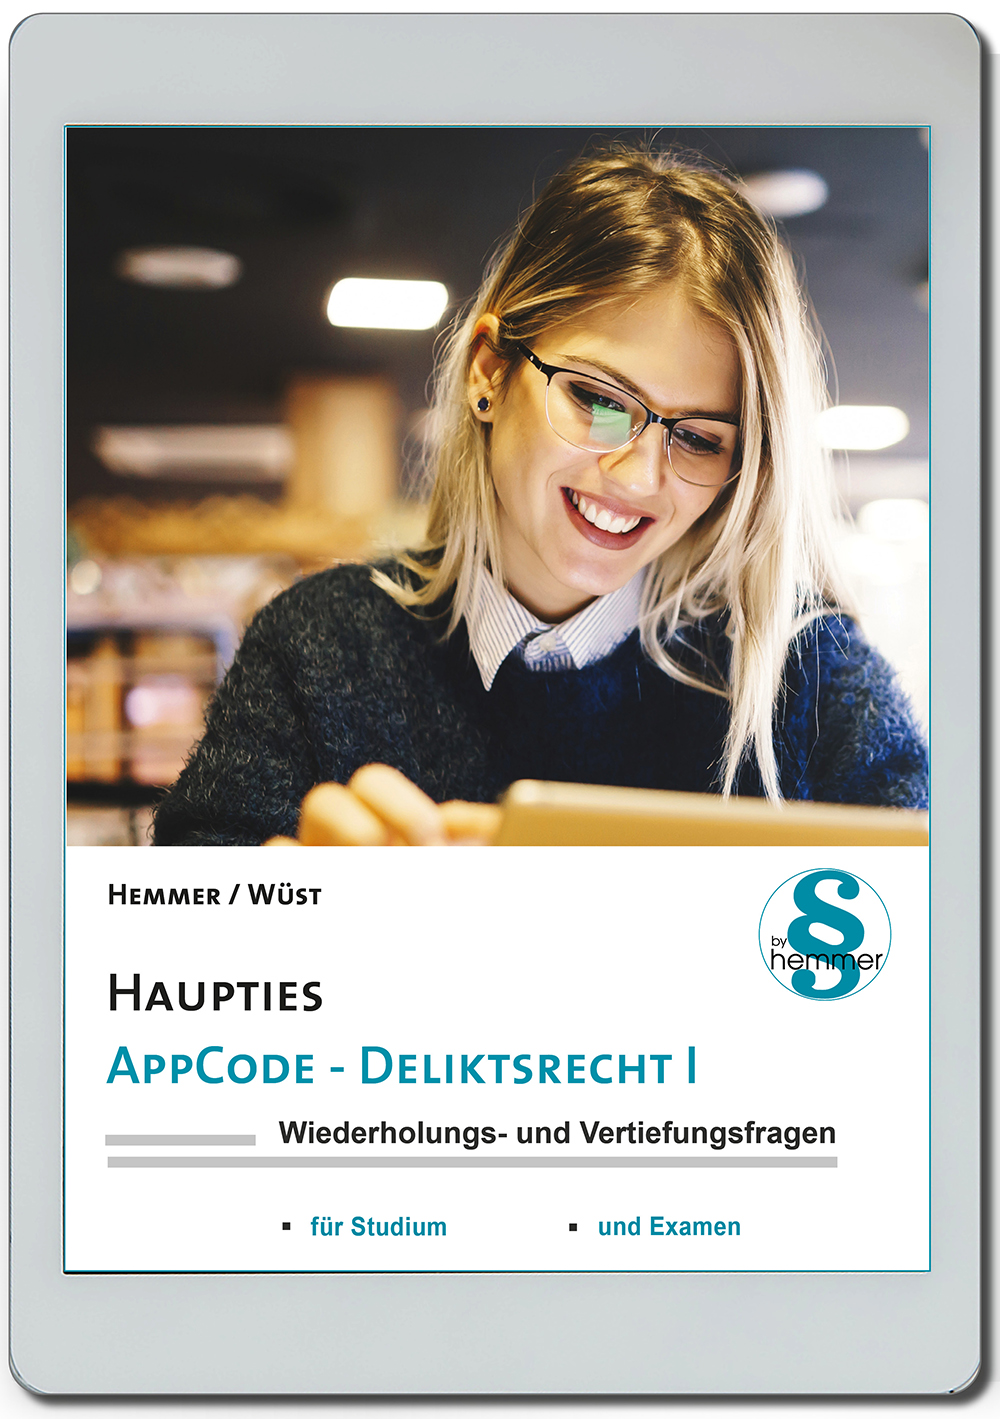 AppCode - haupties - Deliktsrecht I